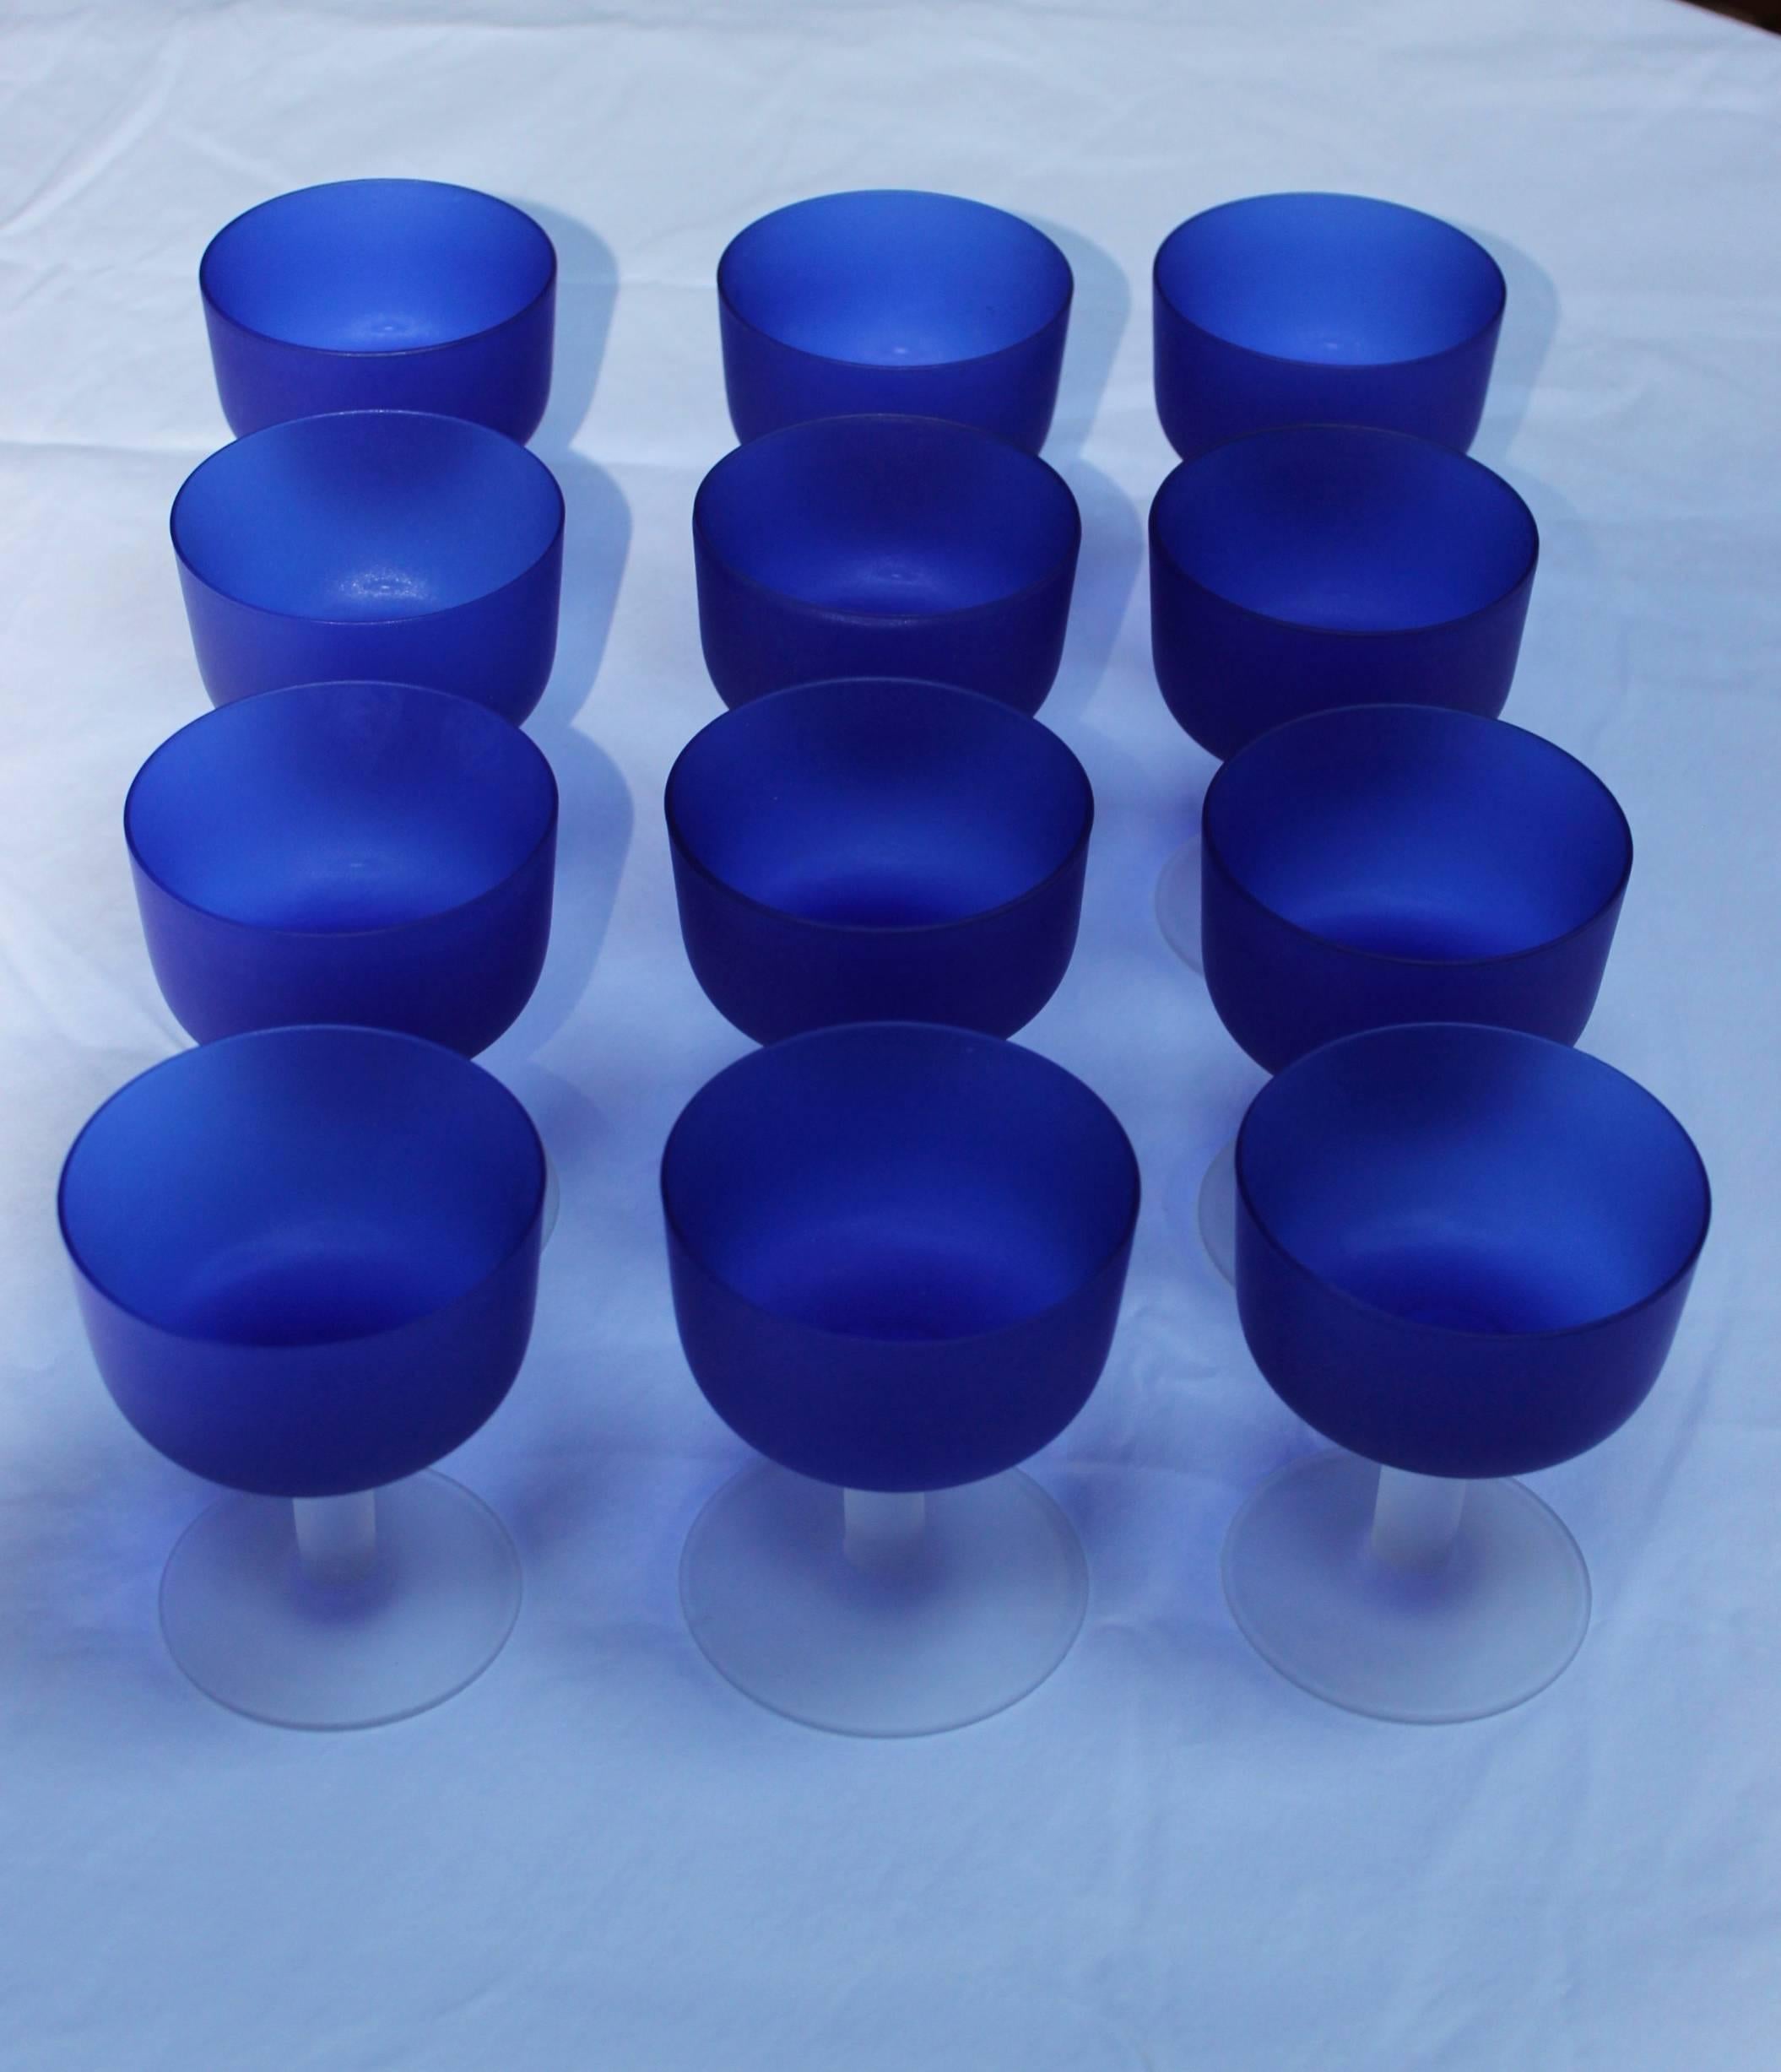 Wunderschönes Set von 12 italienischen mundgeblasenen blauen Glaspokalen, sechs davon haben noch das Originaletikett, in alters- und gebrauchsbedingtem Originalzustand mit leichten Gebrauchsspuren und Patina.